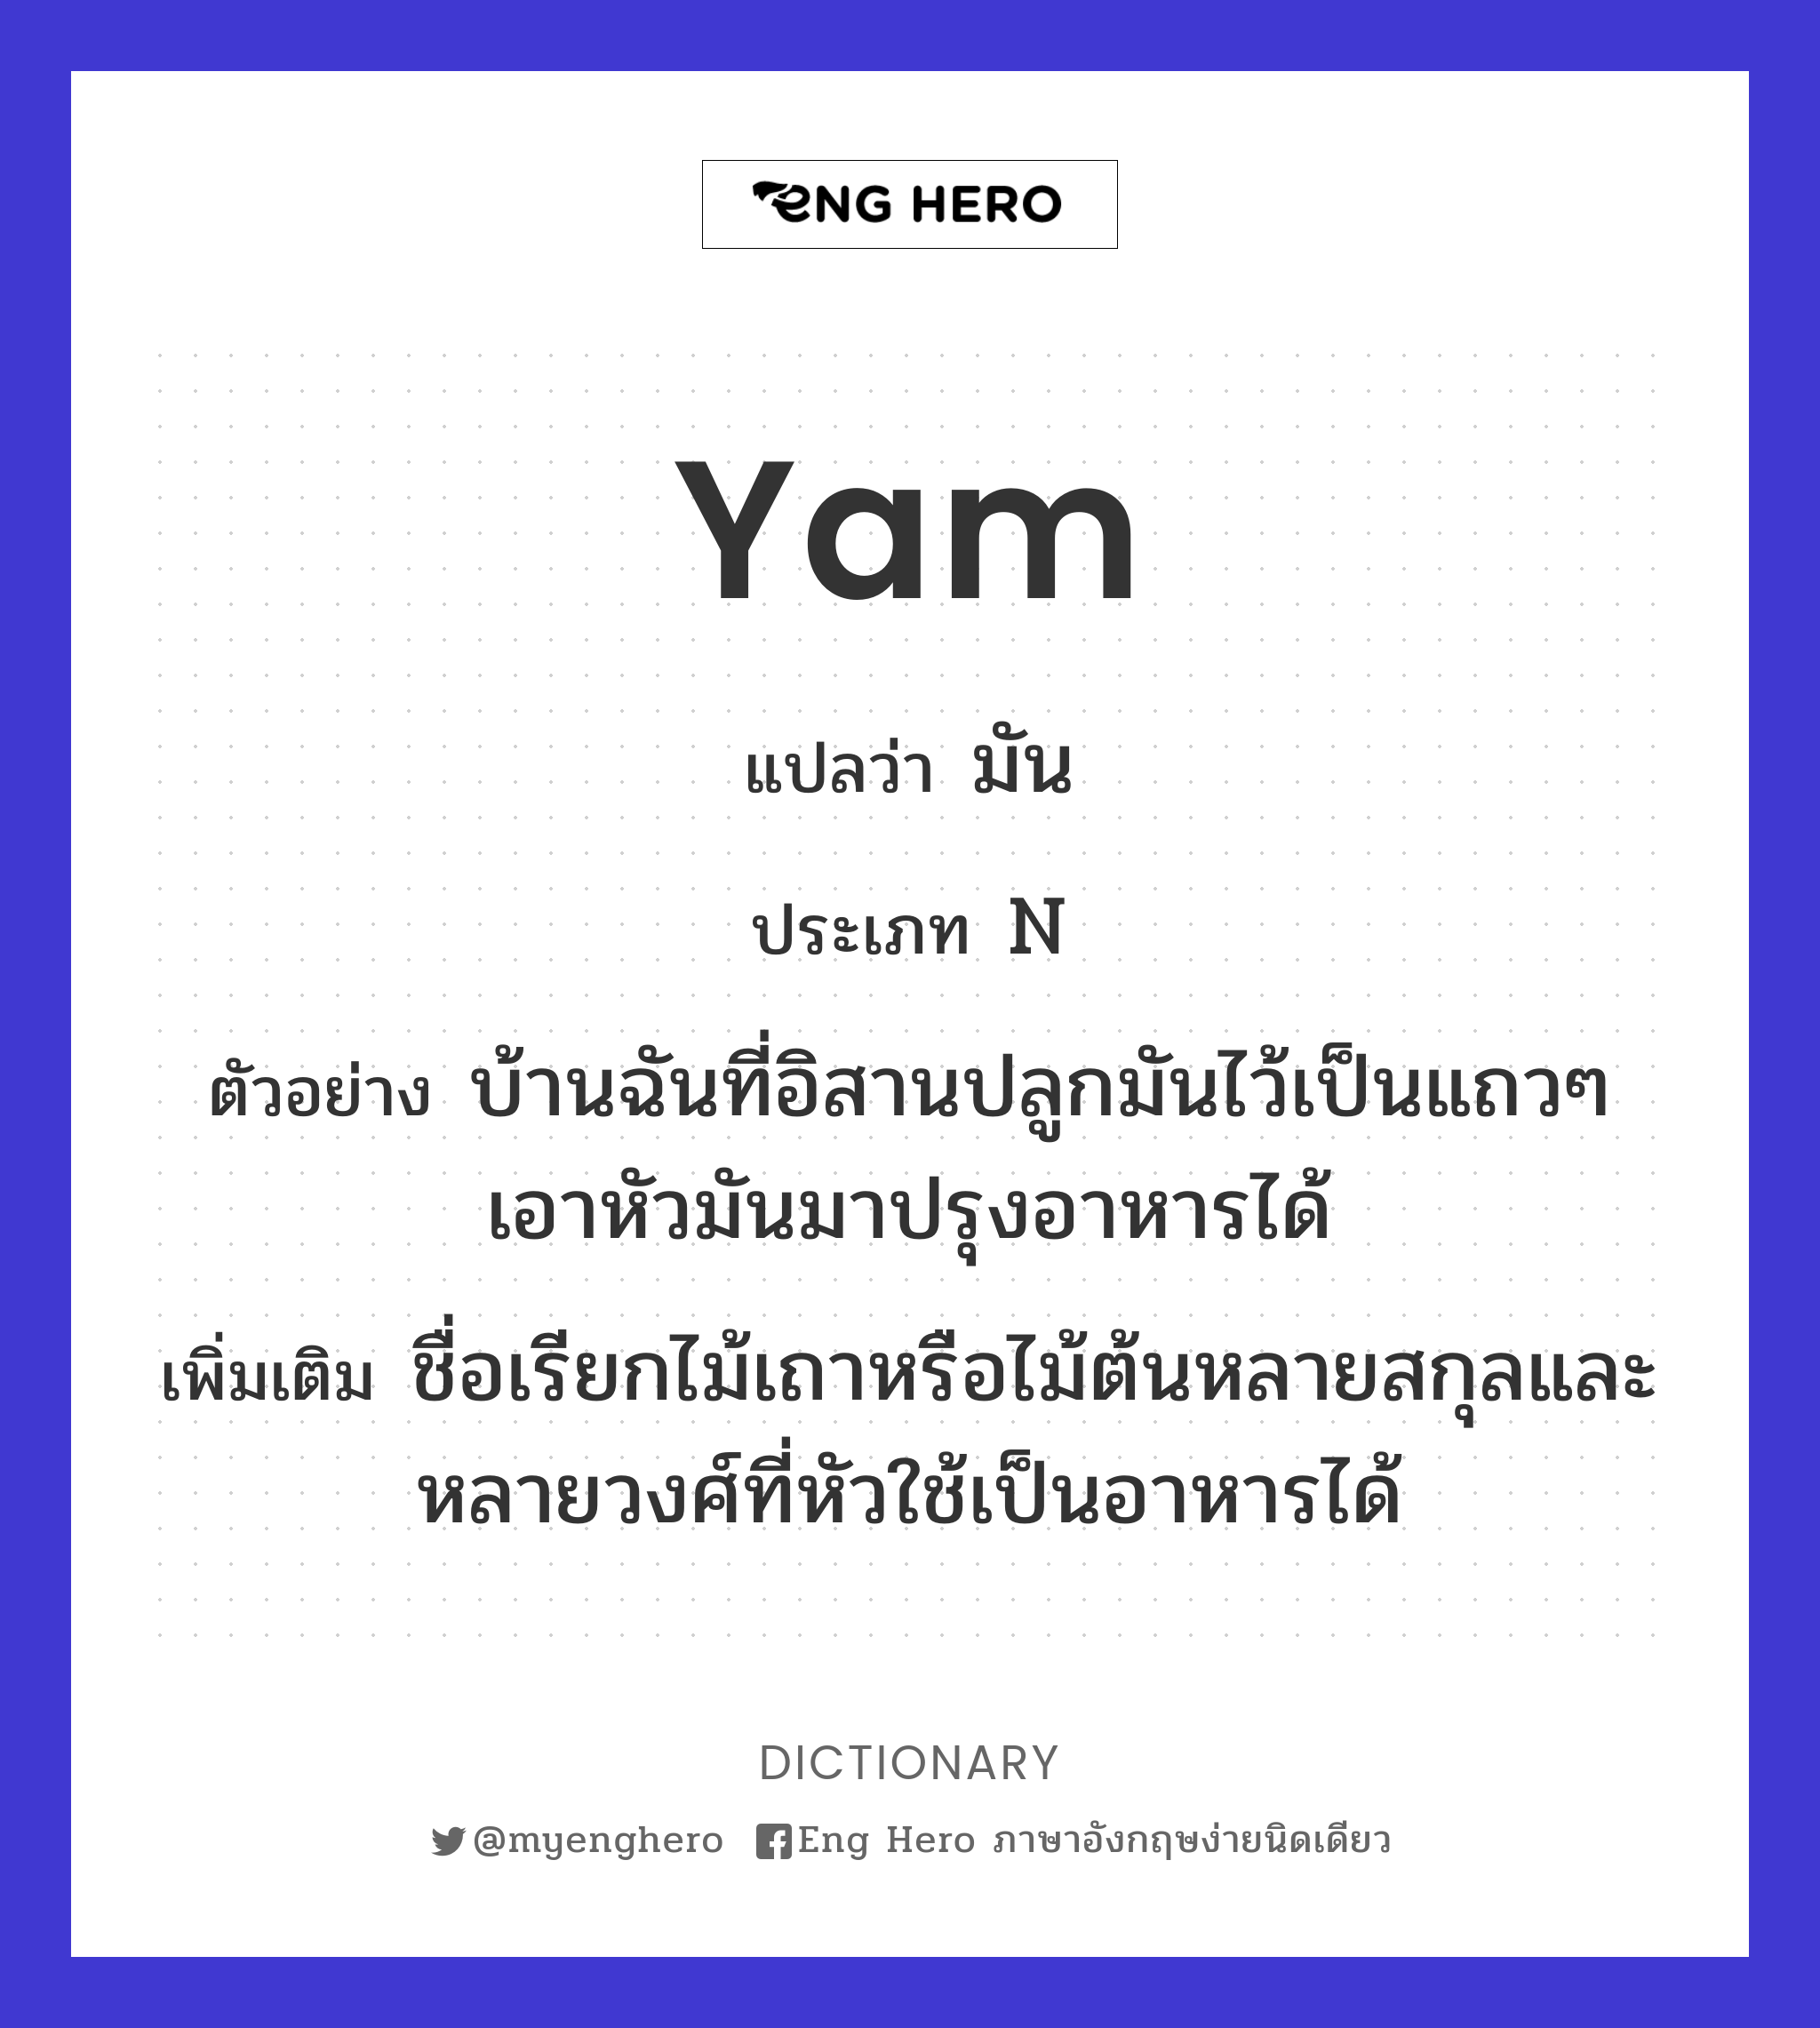 yam